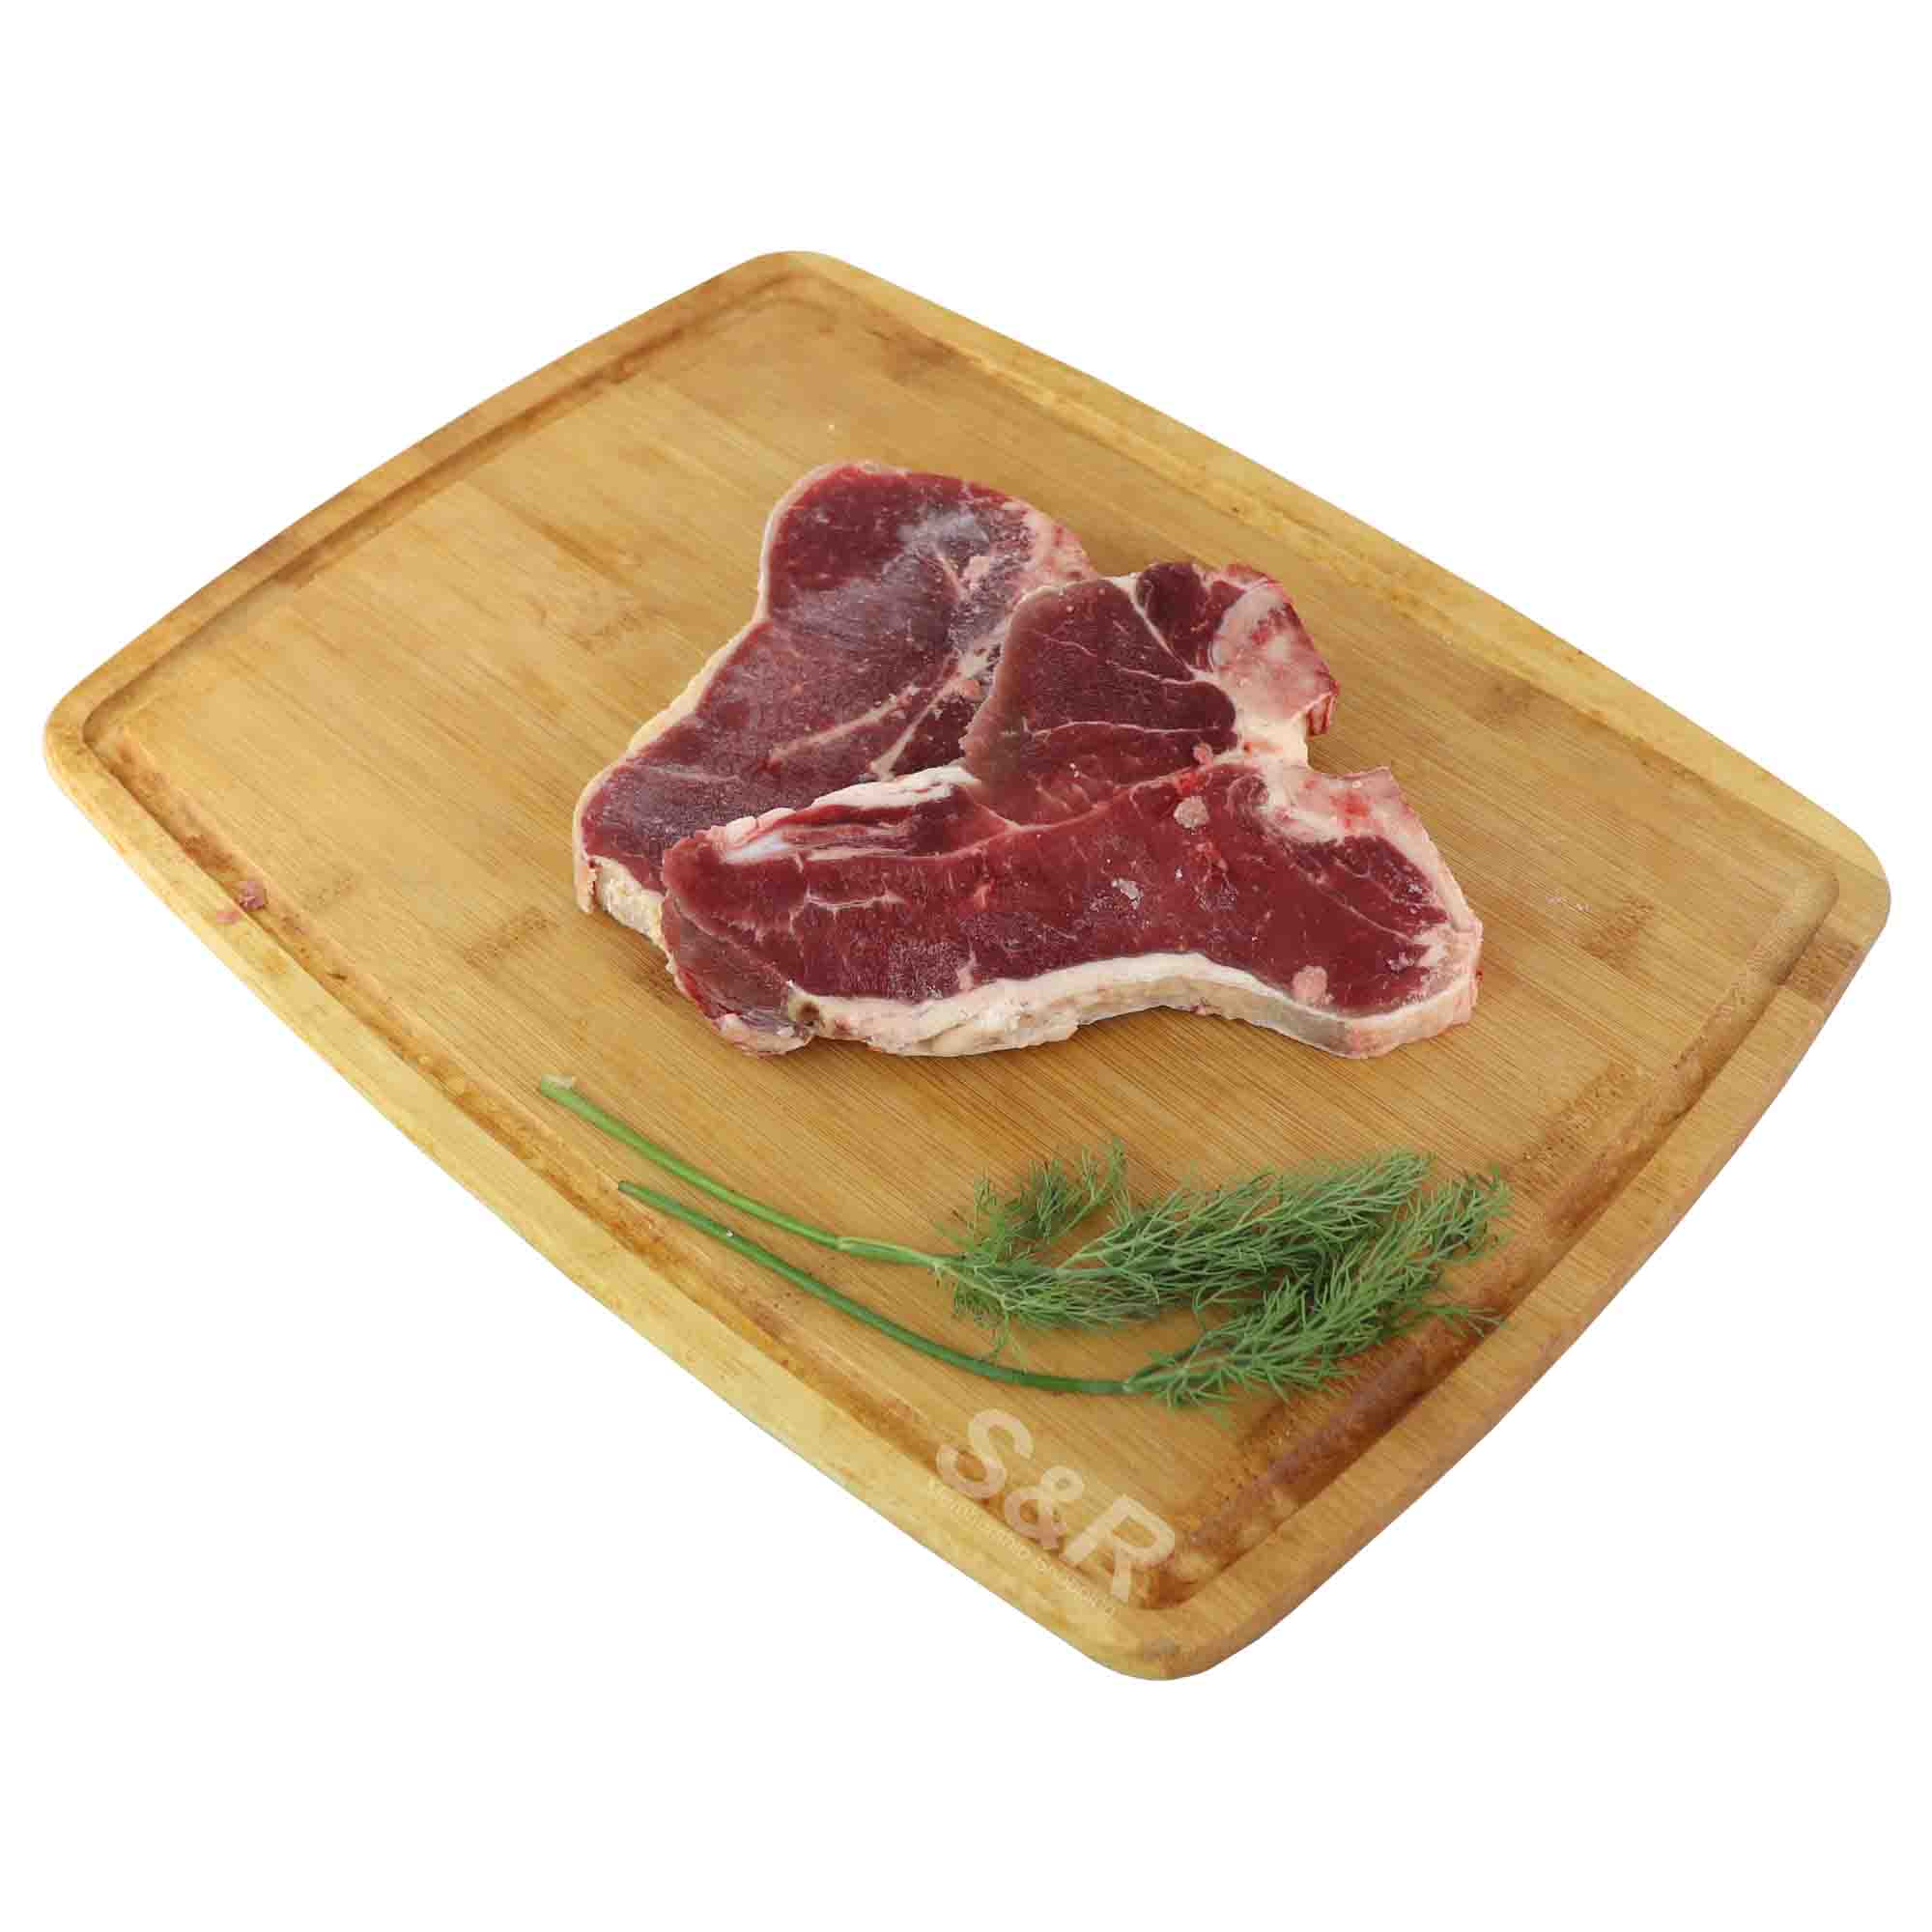 Australia Porterhouse Steak approx. 1.2kg